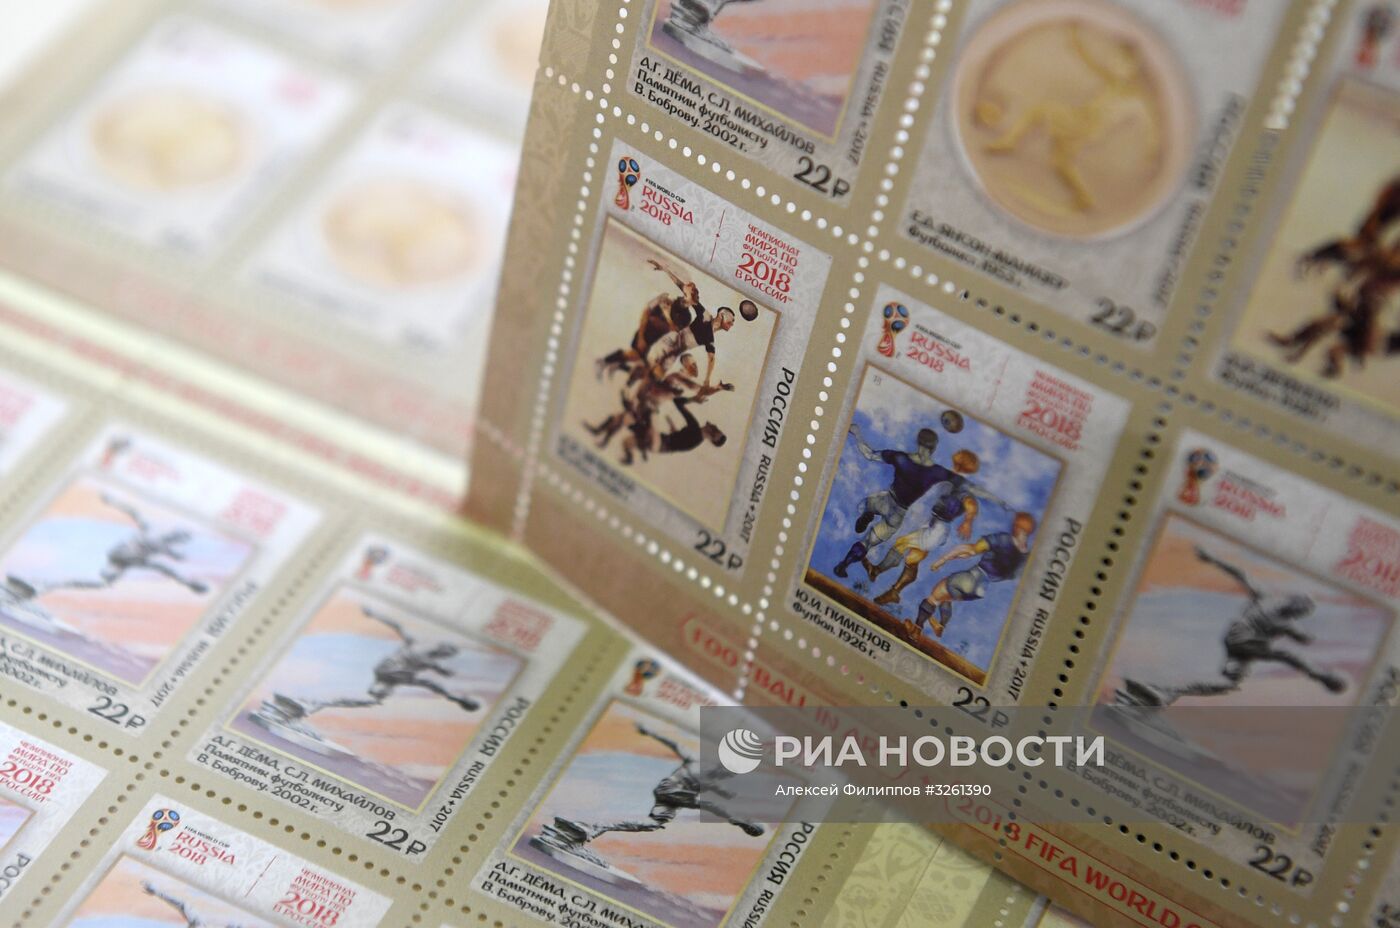 Четыре марки, посвященные футболу в искусстве, вышли в почтовое обращение